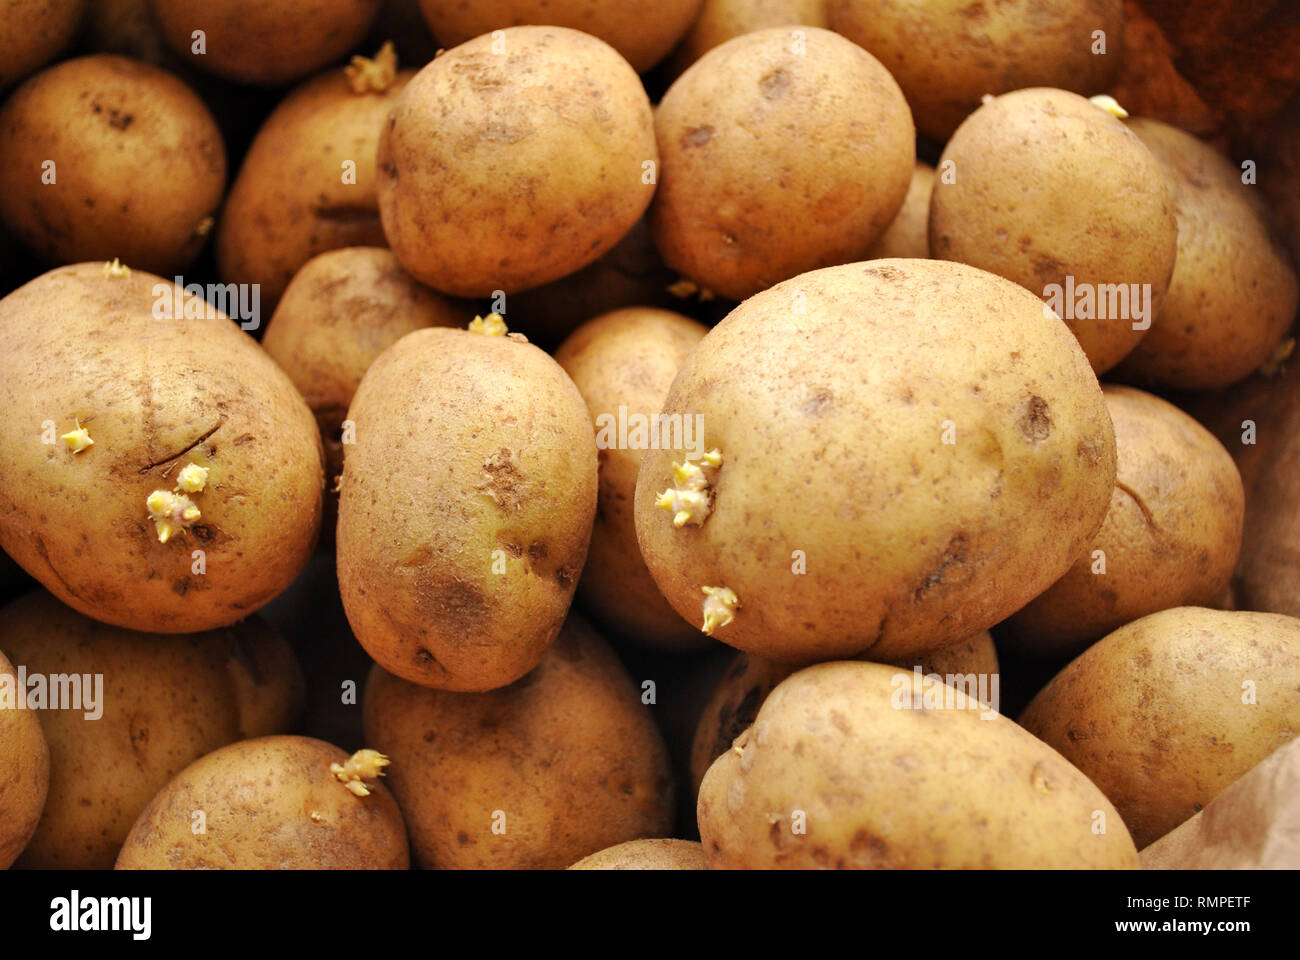 Whole Raw White Potatoes Stock Photo